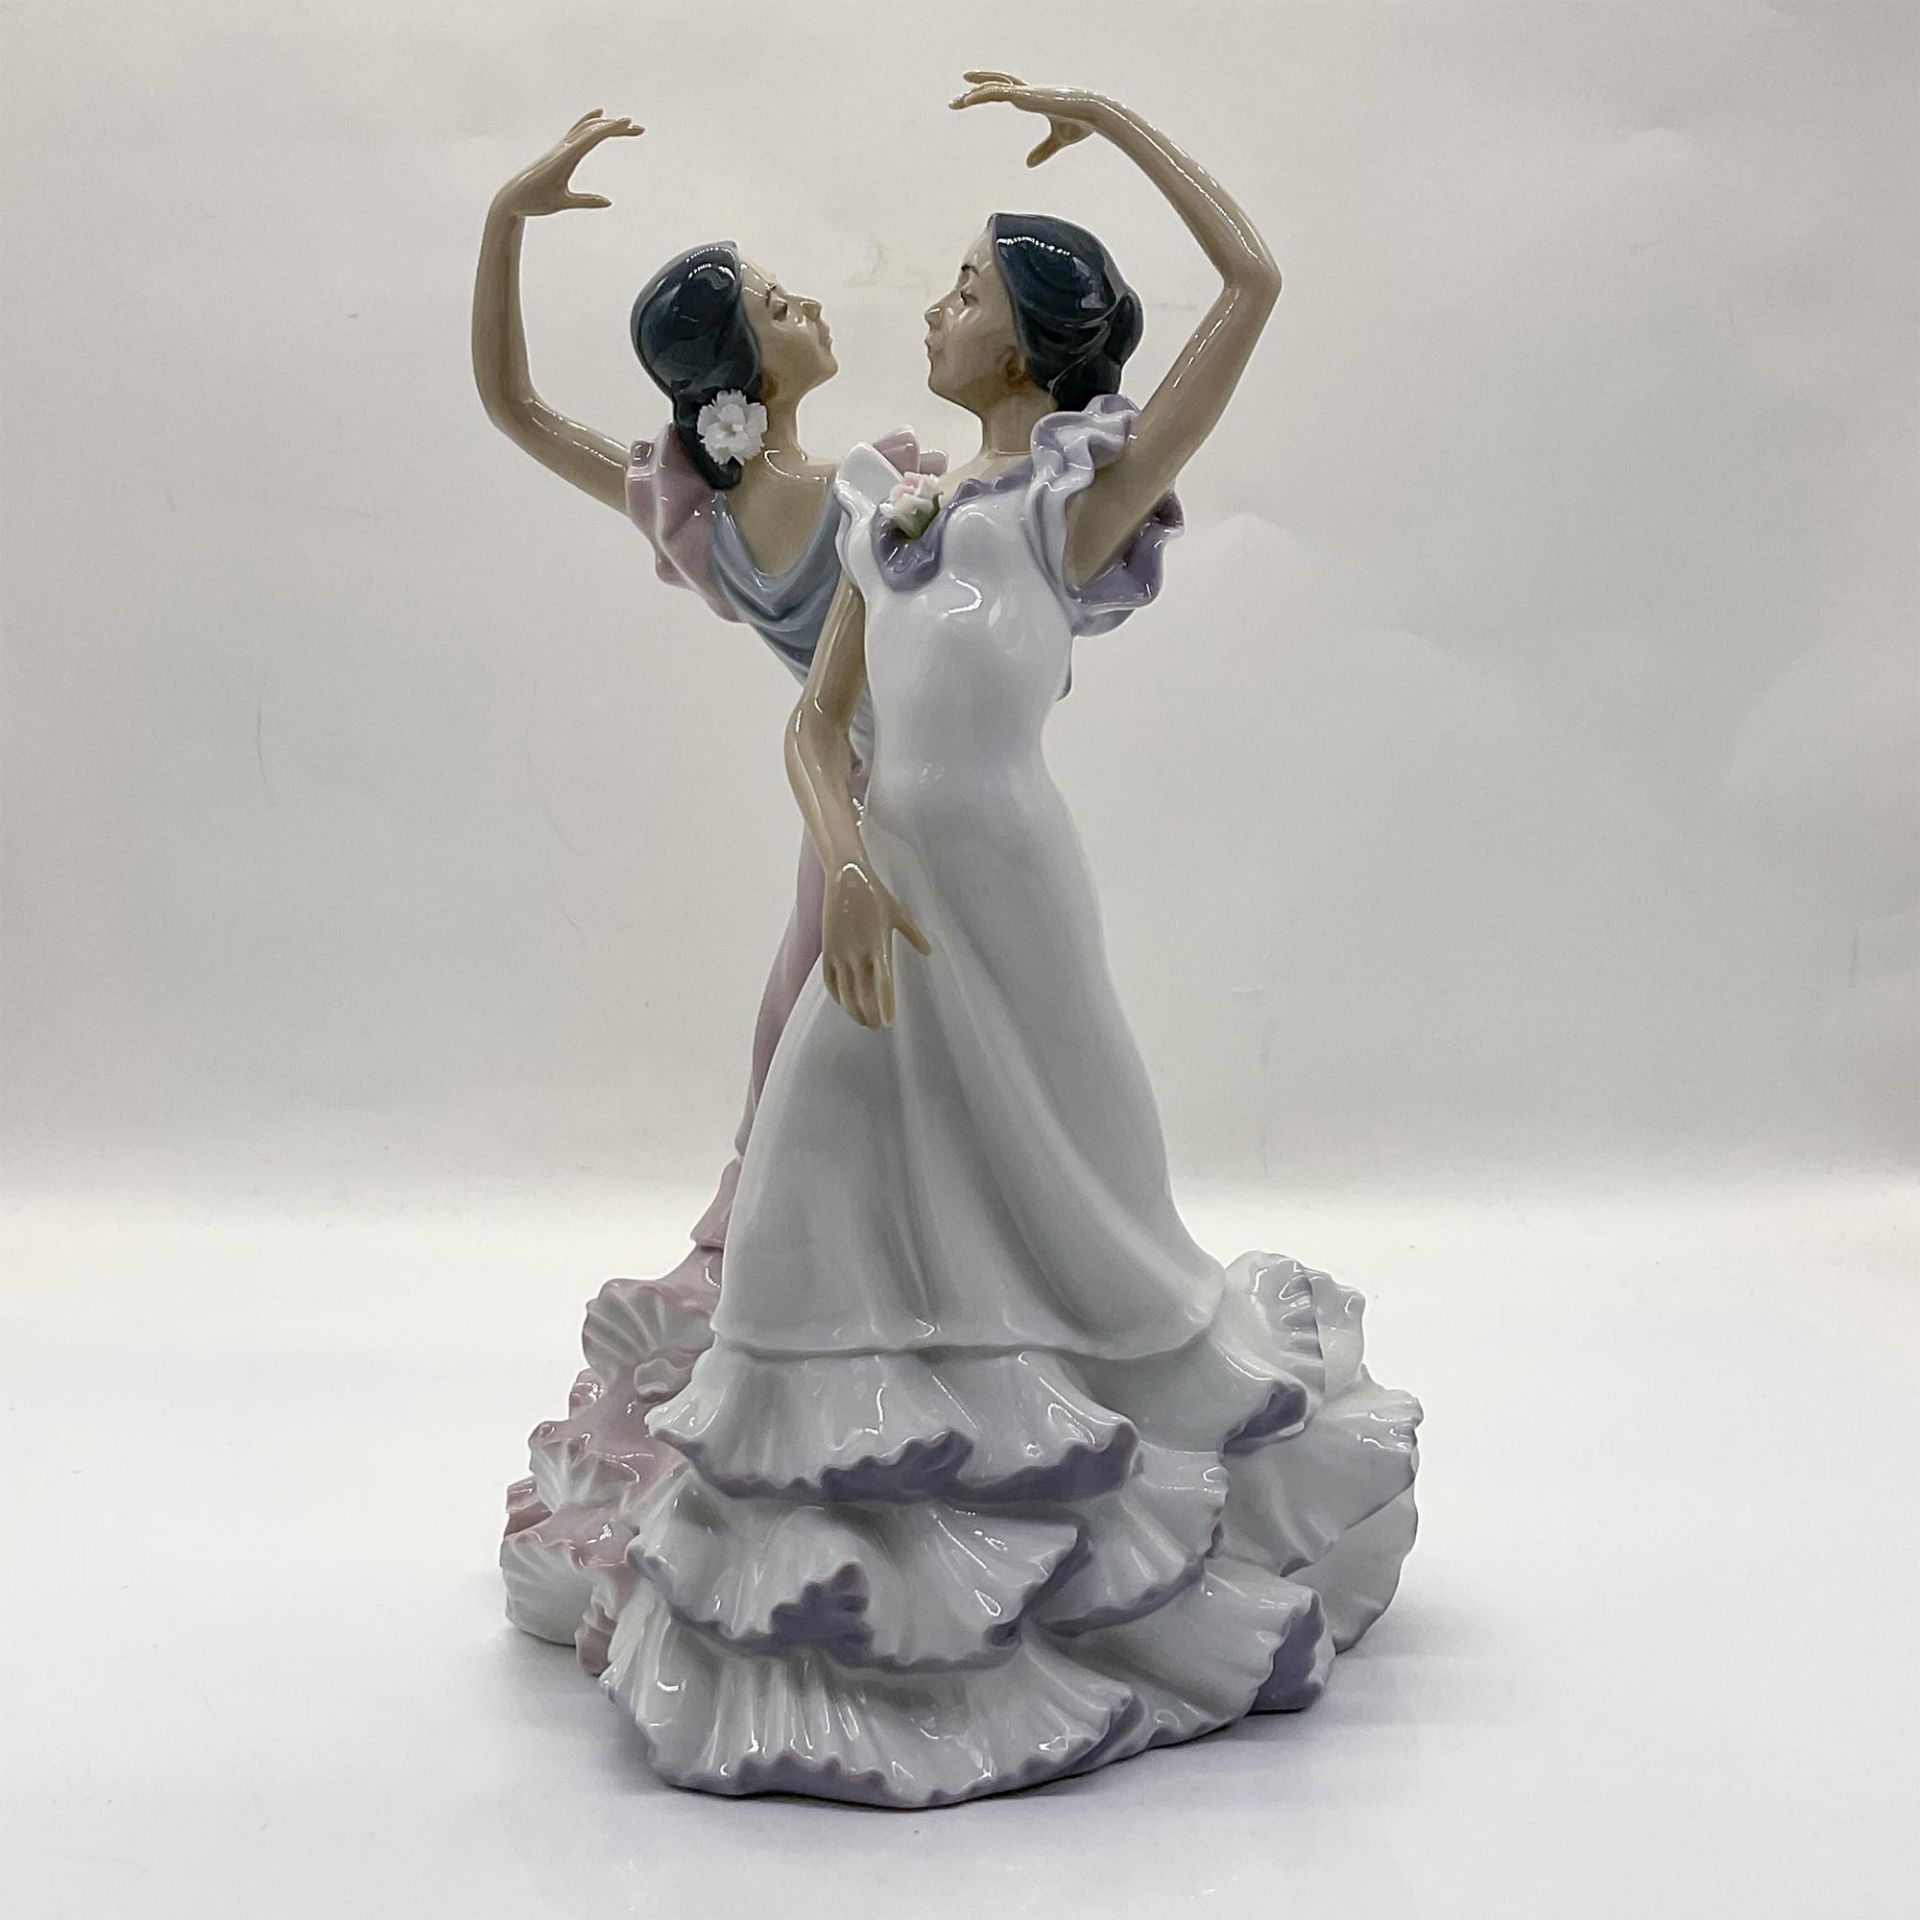 Ole 1005601 - Lladro Porcelain Figurine